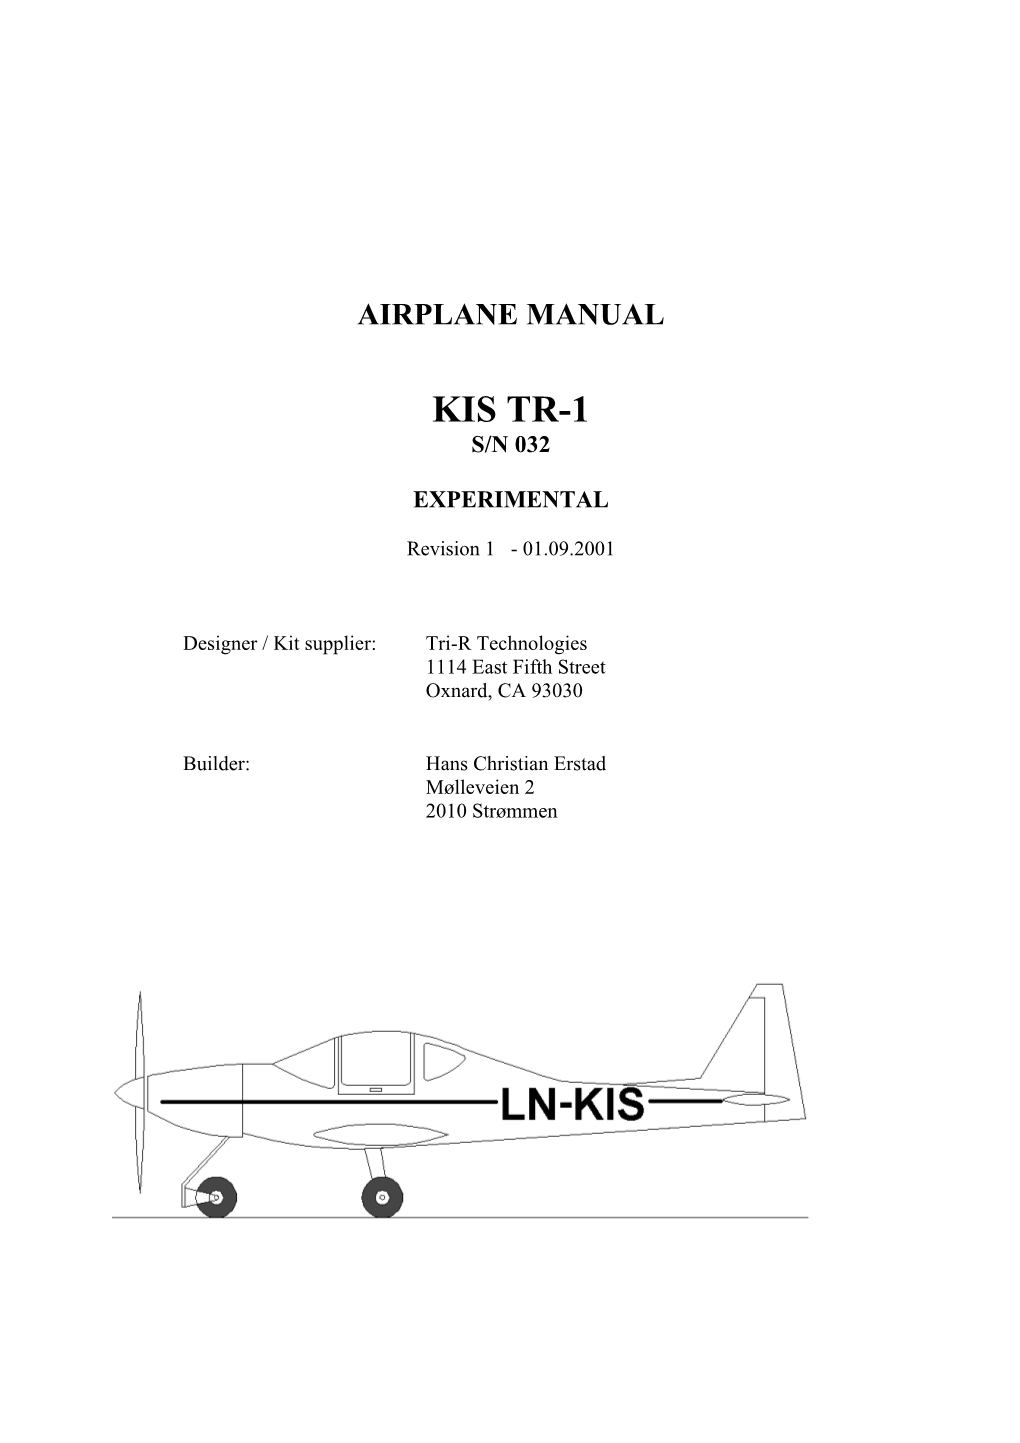 Airplane Manual - Rev. 1 KIS TR-1 #032 LN-KIS Page 1 of 40